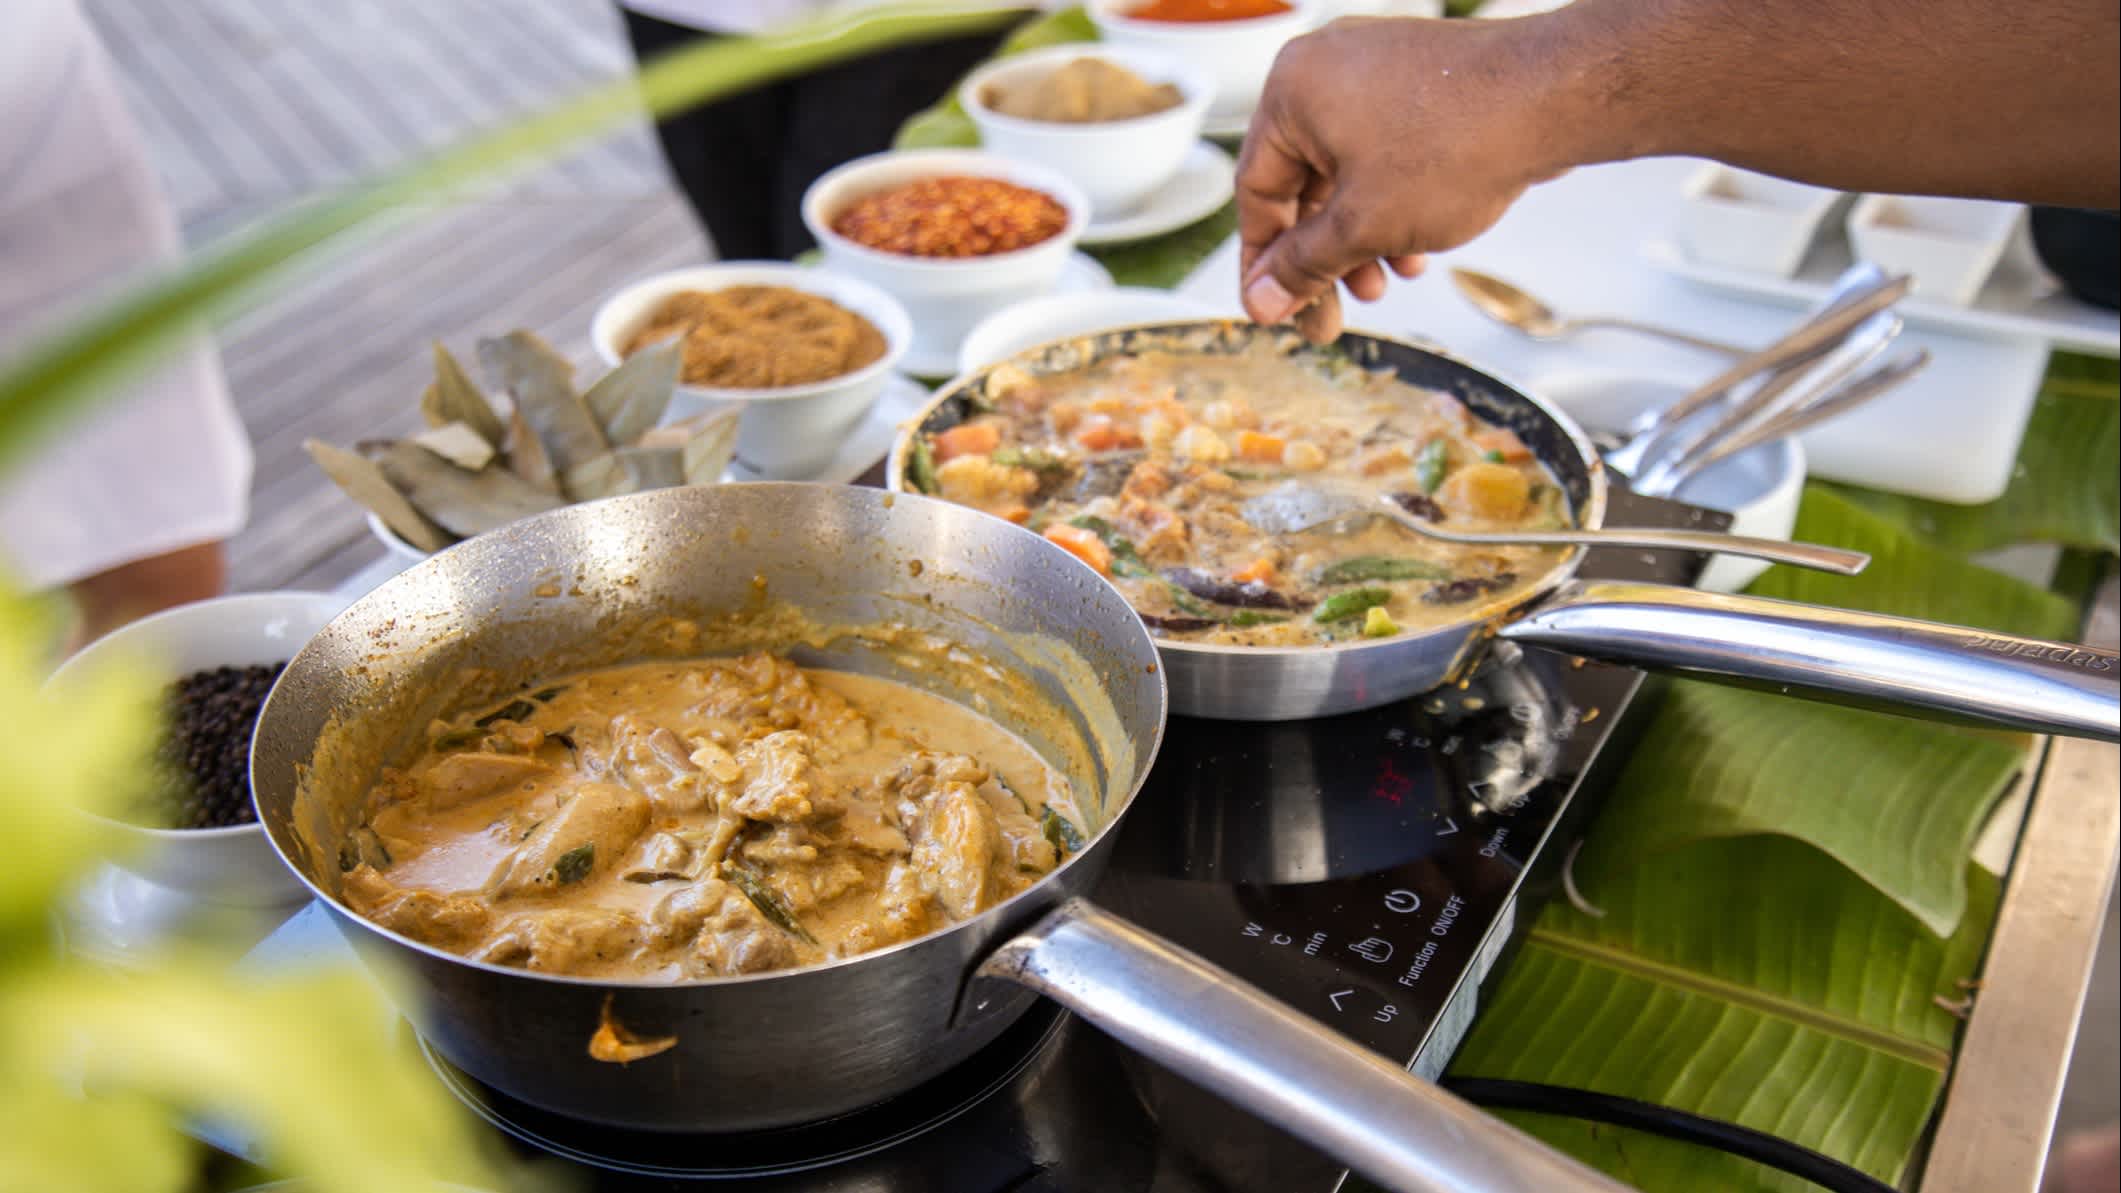 Maledivisches Thunfischcurry in Stahlpfanne in der Küche mit Kokoscrememilch und Gewürzen